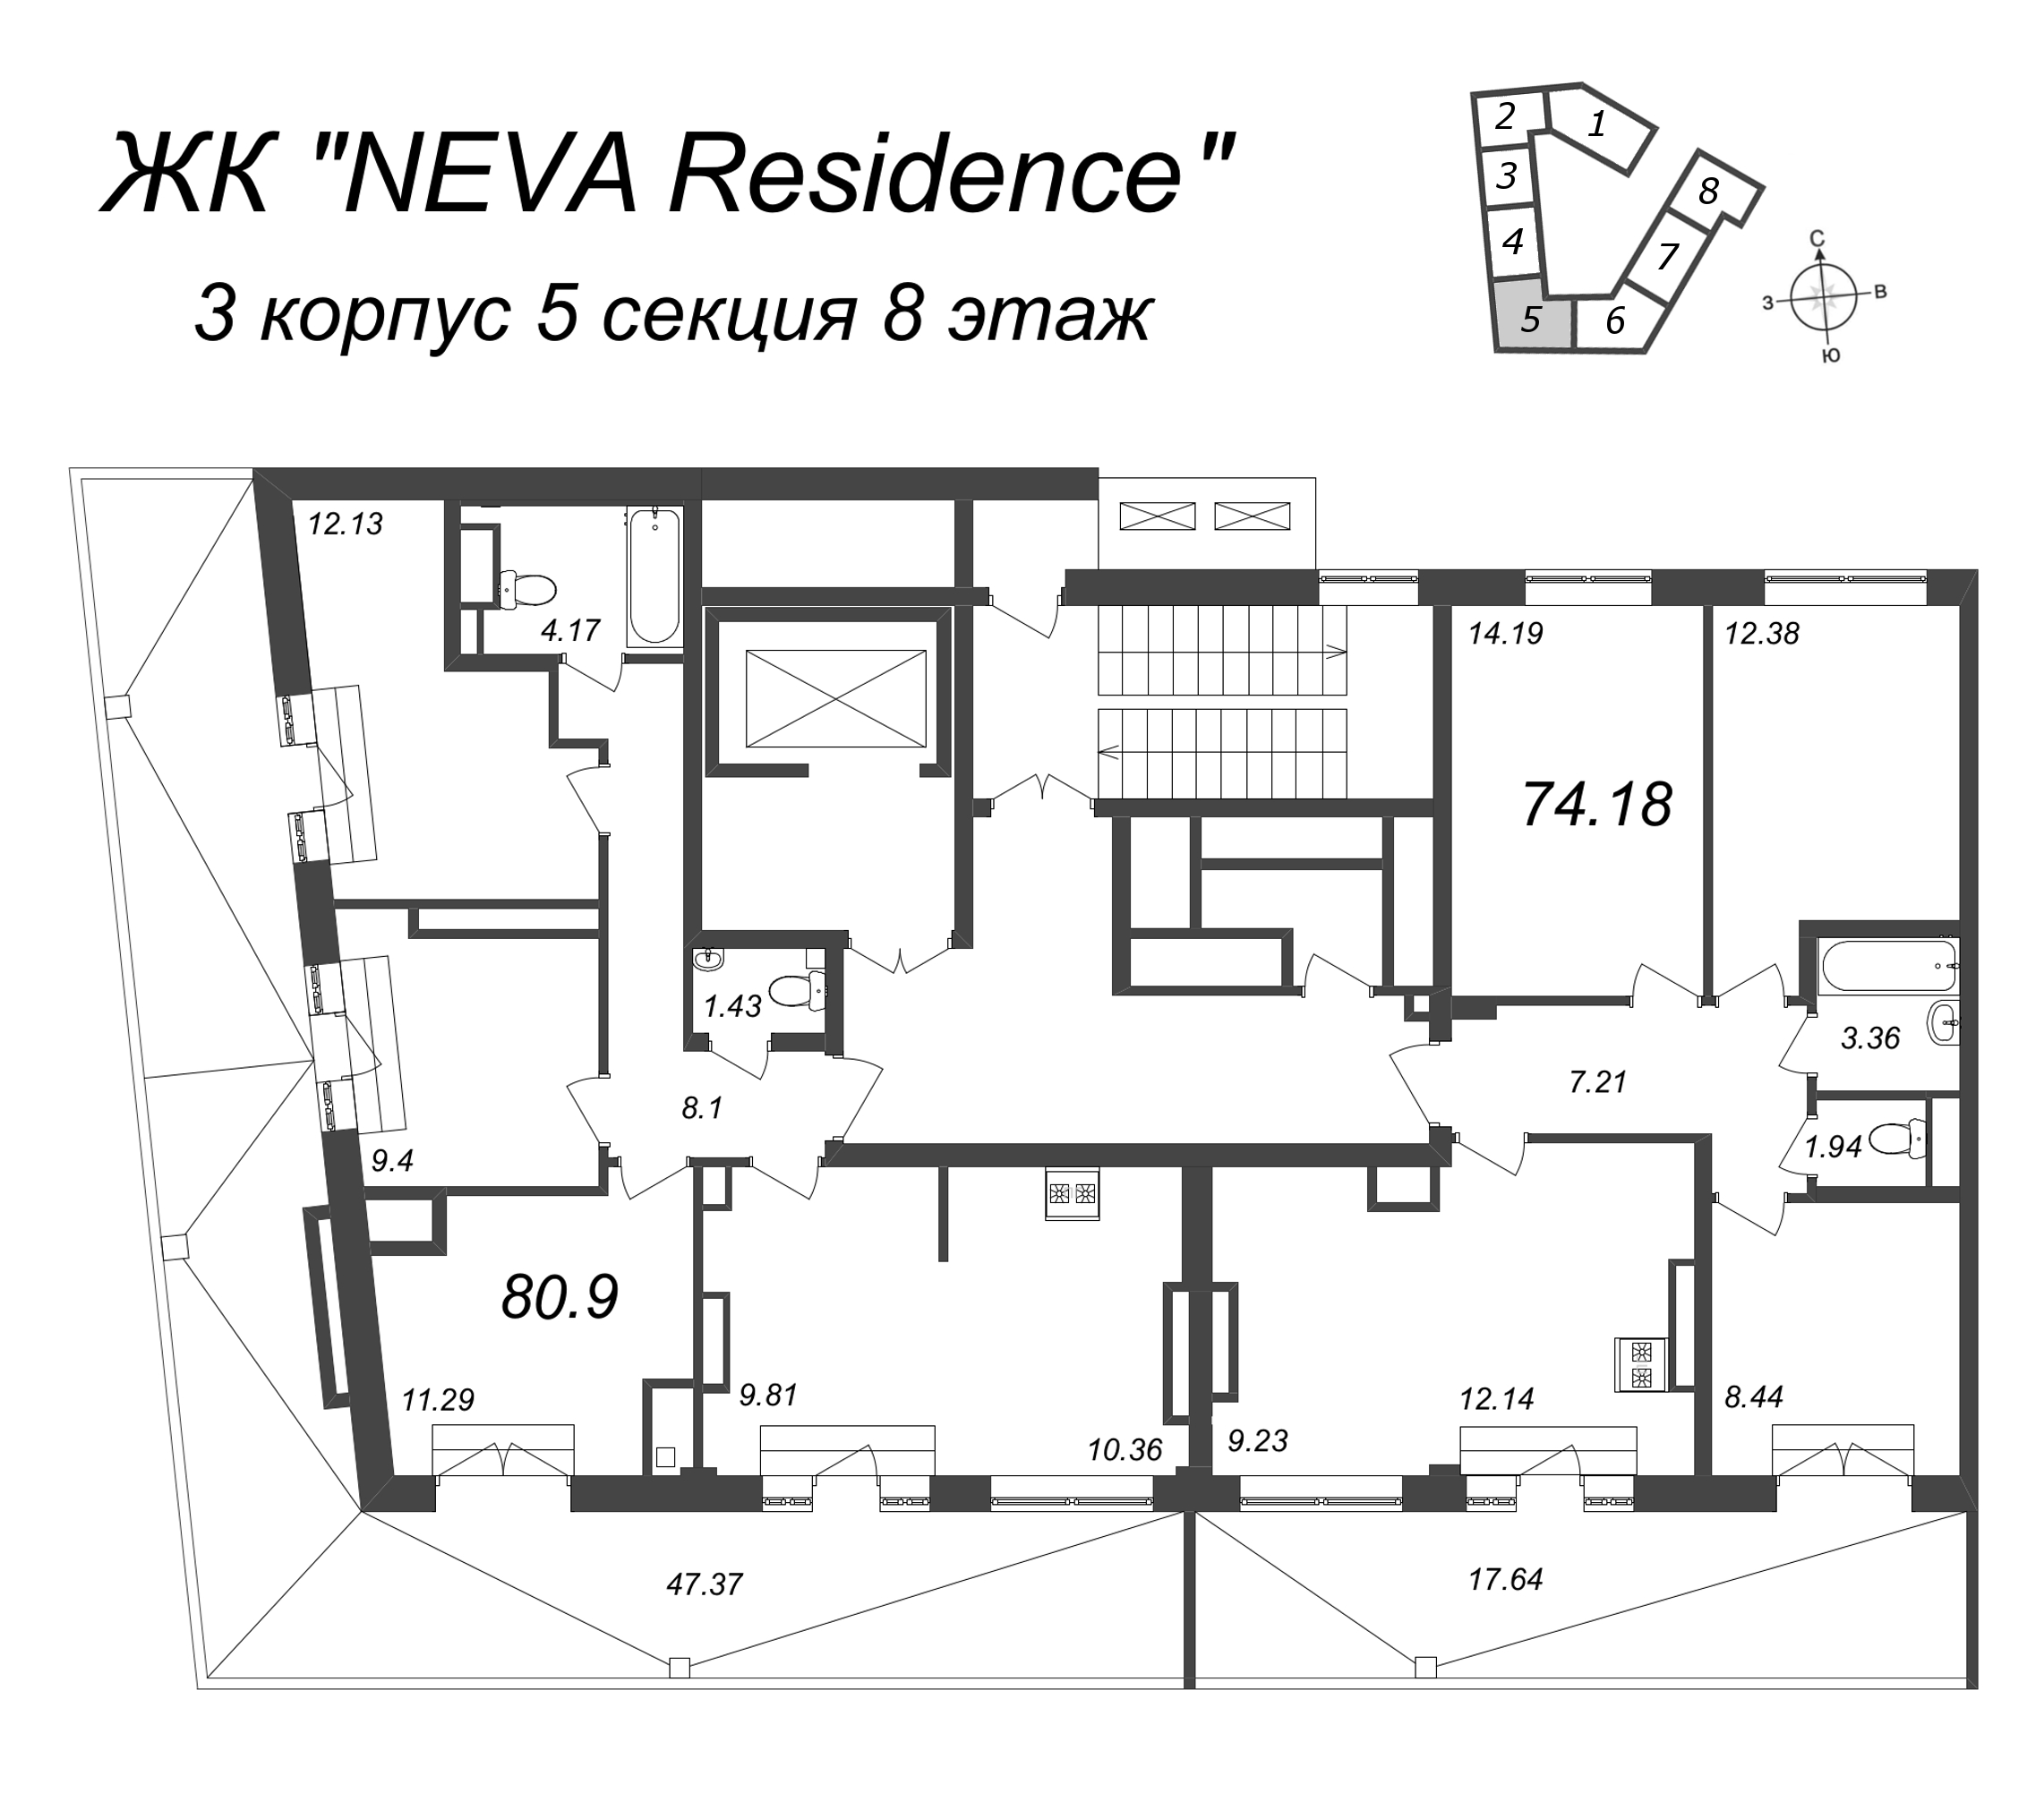 4-комнатная квартира, 80.9 м² в ЖК "Neva Residence" - планировка этажа